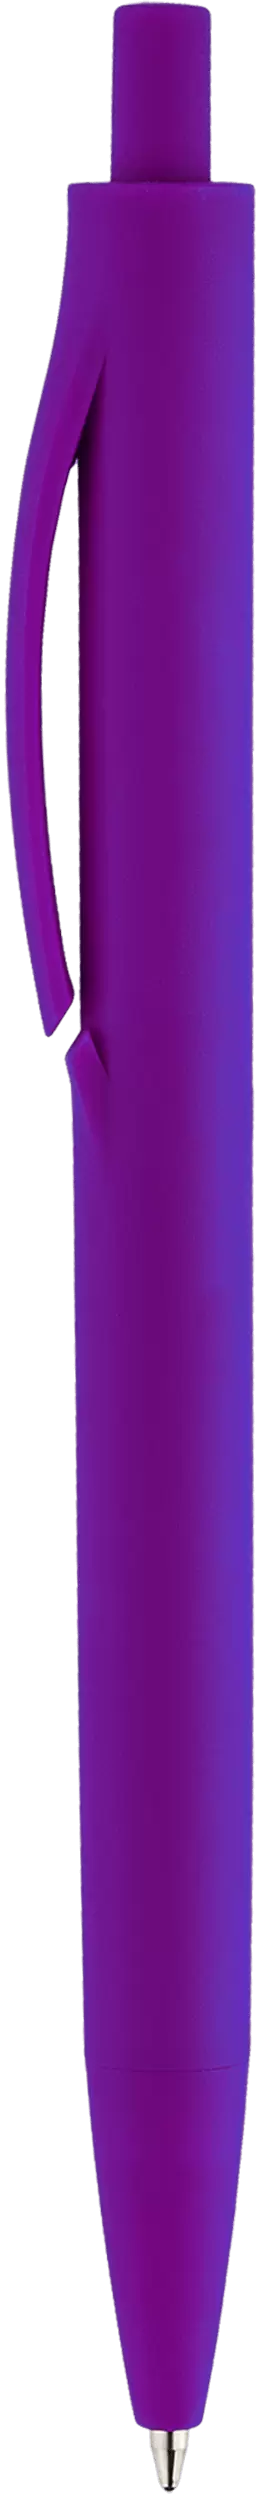 Ручка IGLA SOFT Фиолетовая 1030-11